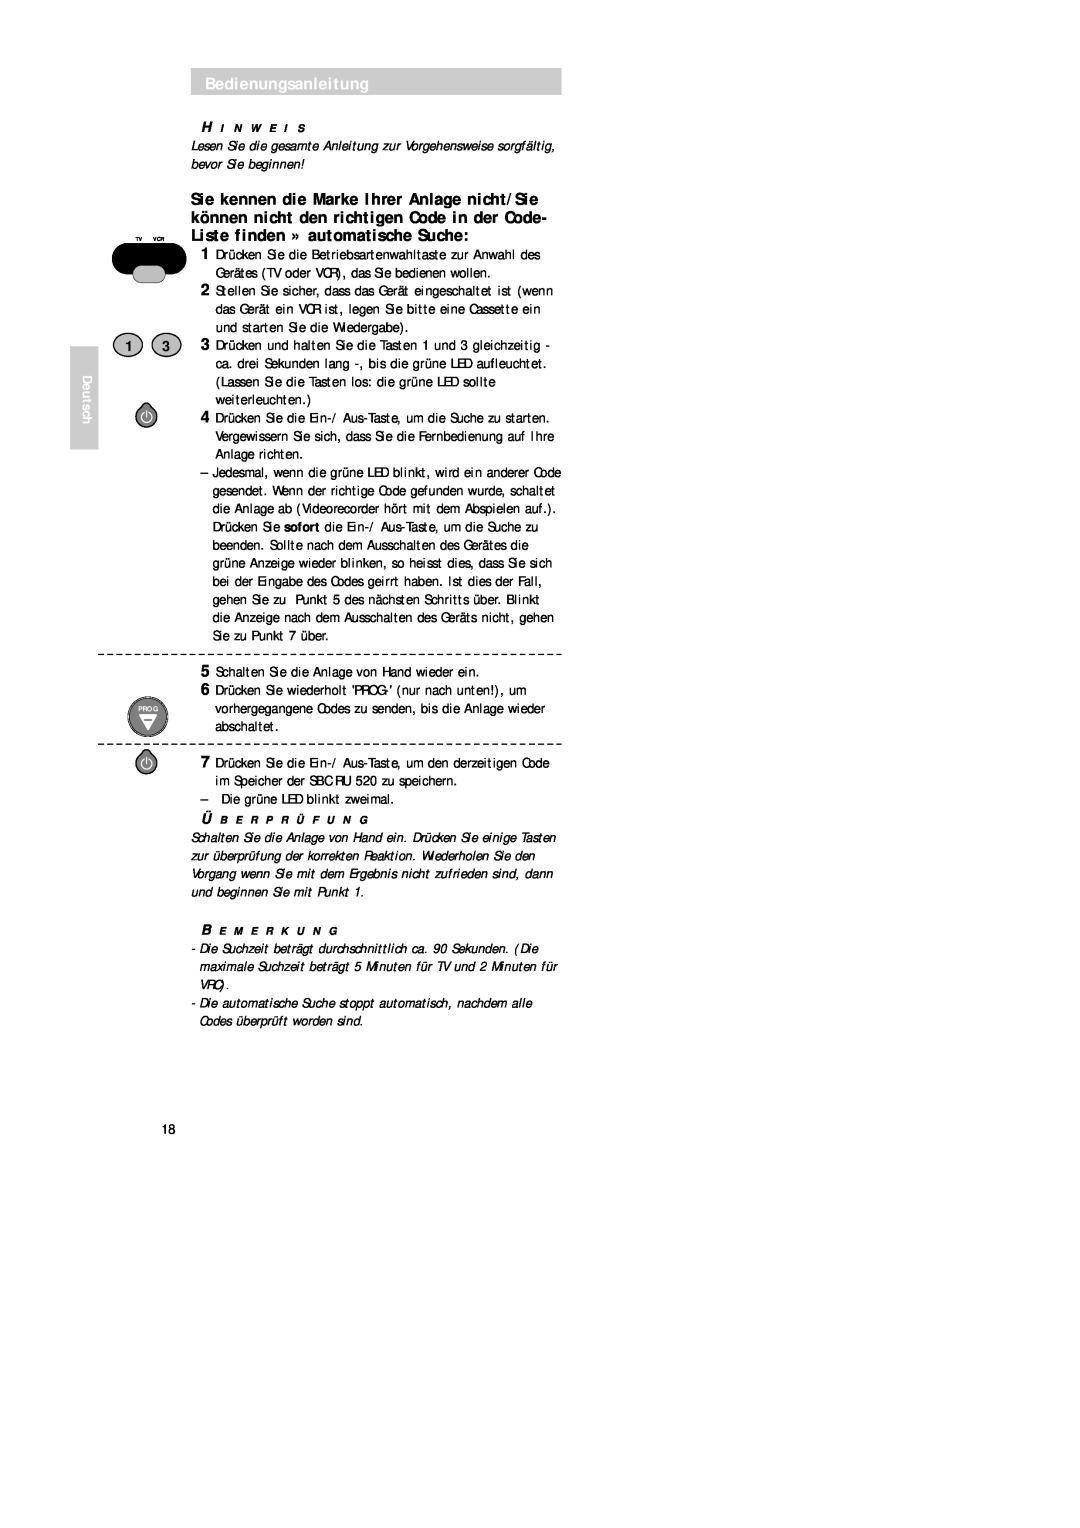 Philips SBC RU 520 manual Bedienungsanleitung, Deutsch 